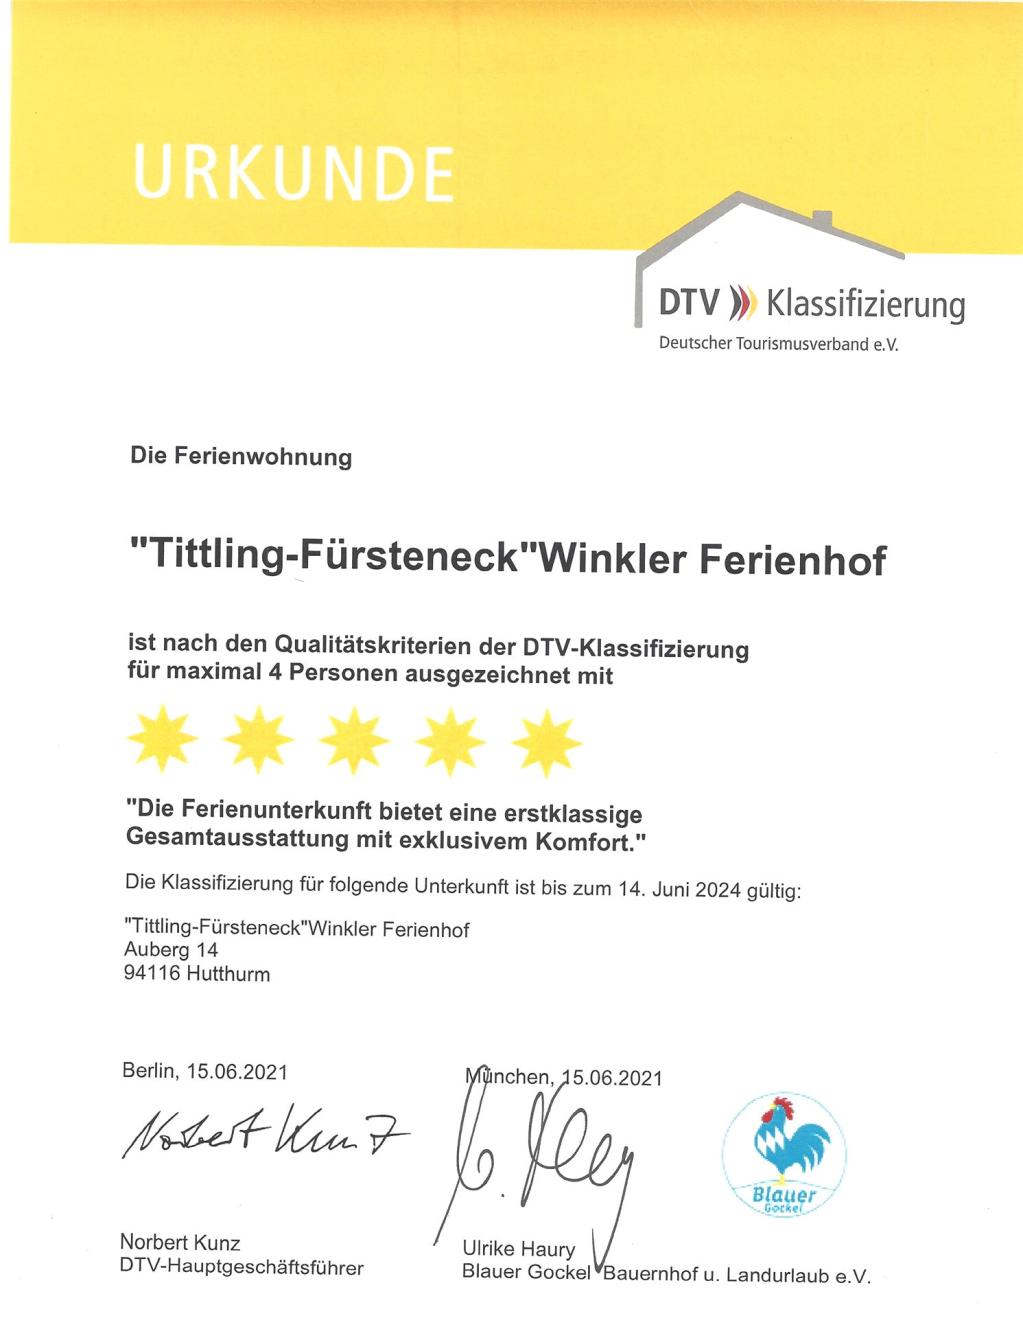 DTV Klassifizierung 5 Sterne Fewo Tittling-Fürsteneck